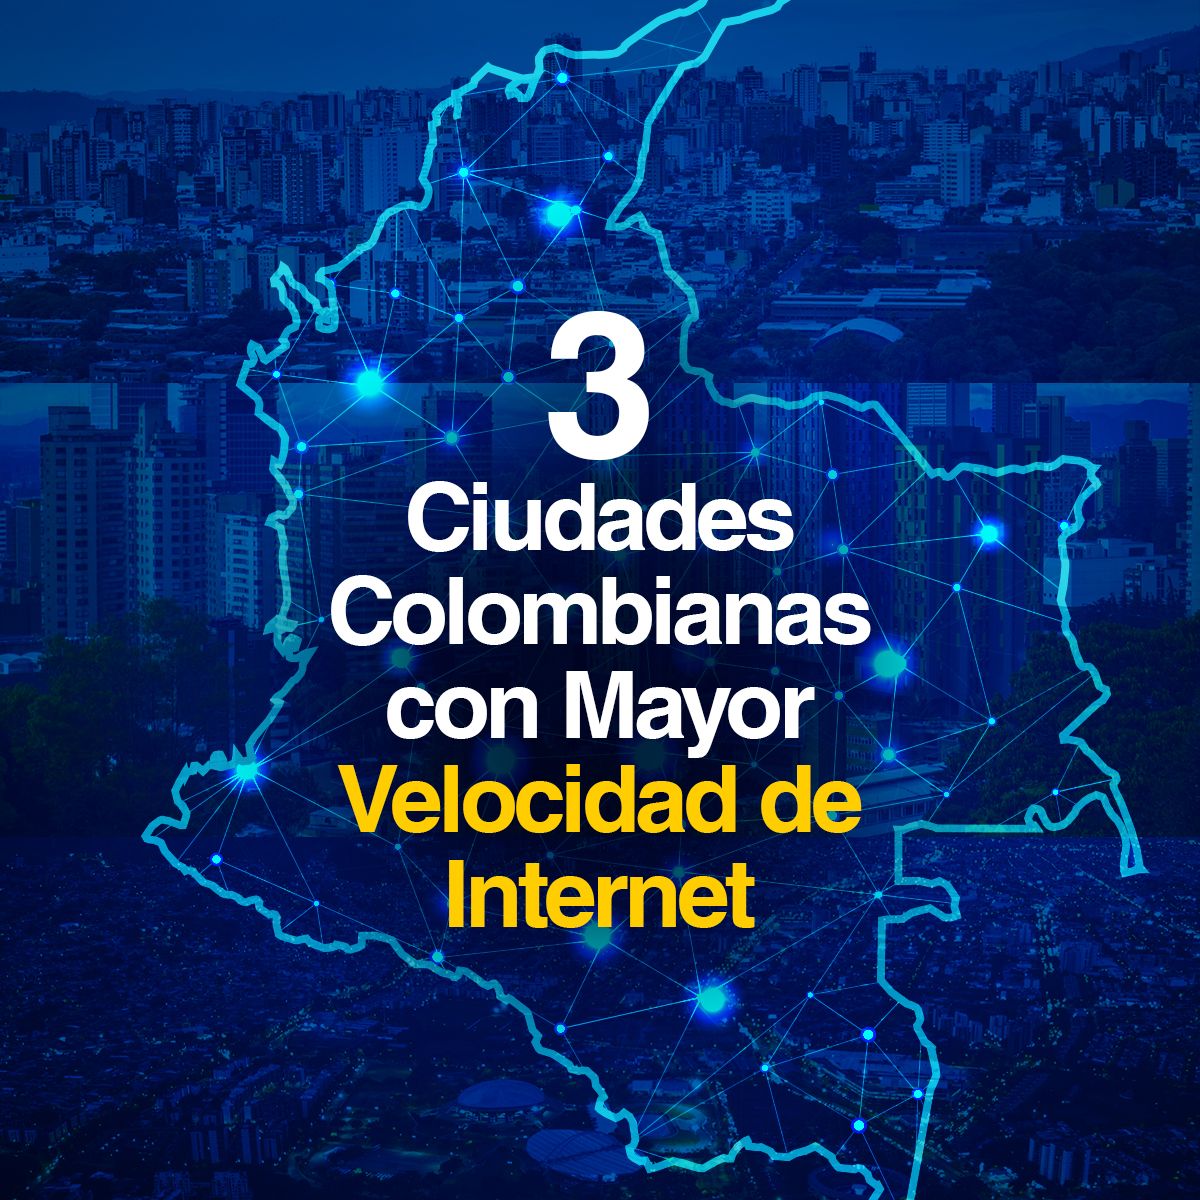 3 Ciudades Colombianas con Mayor Velocidad de Internet